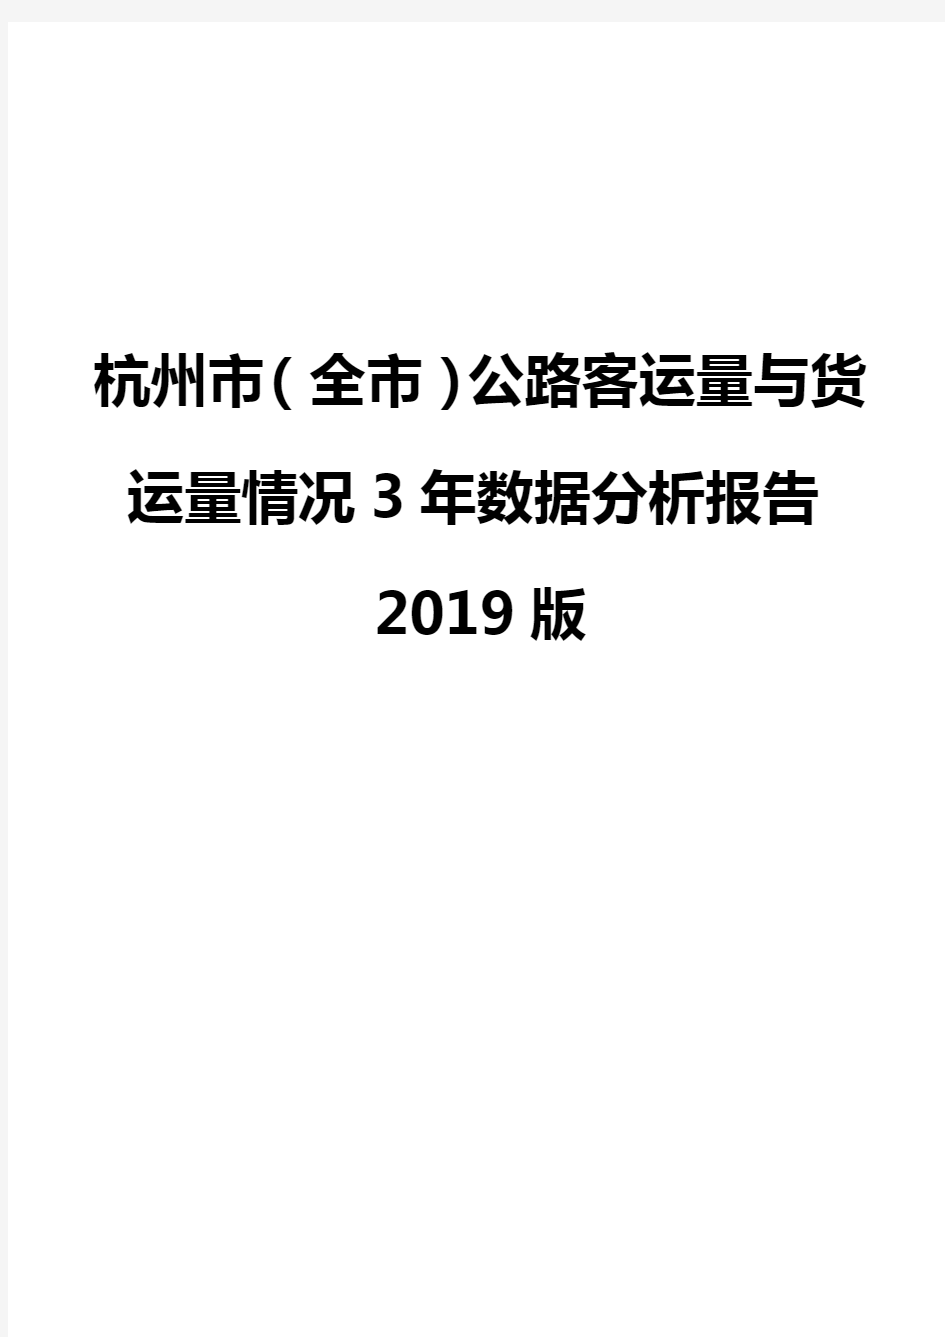 杭州市(全市)公路客运量与货运量情况3年数据分析报告2019版